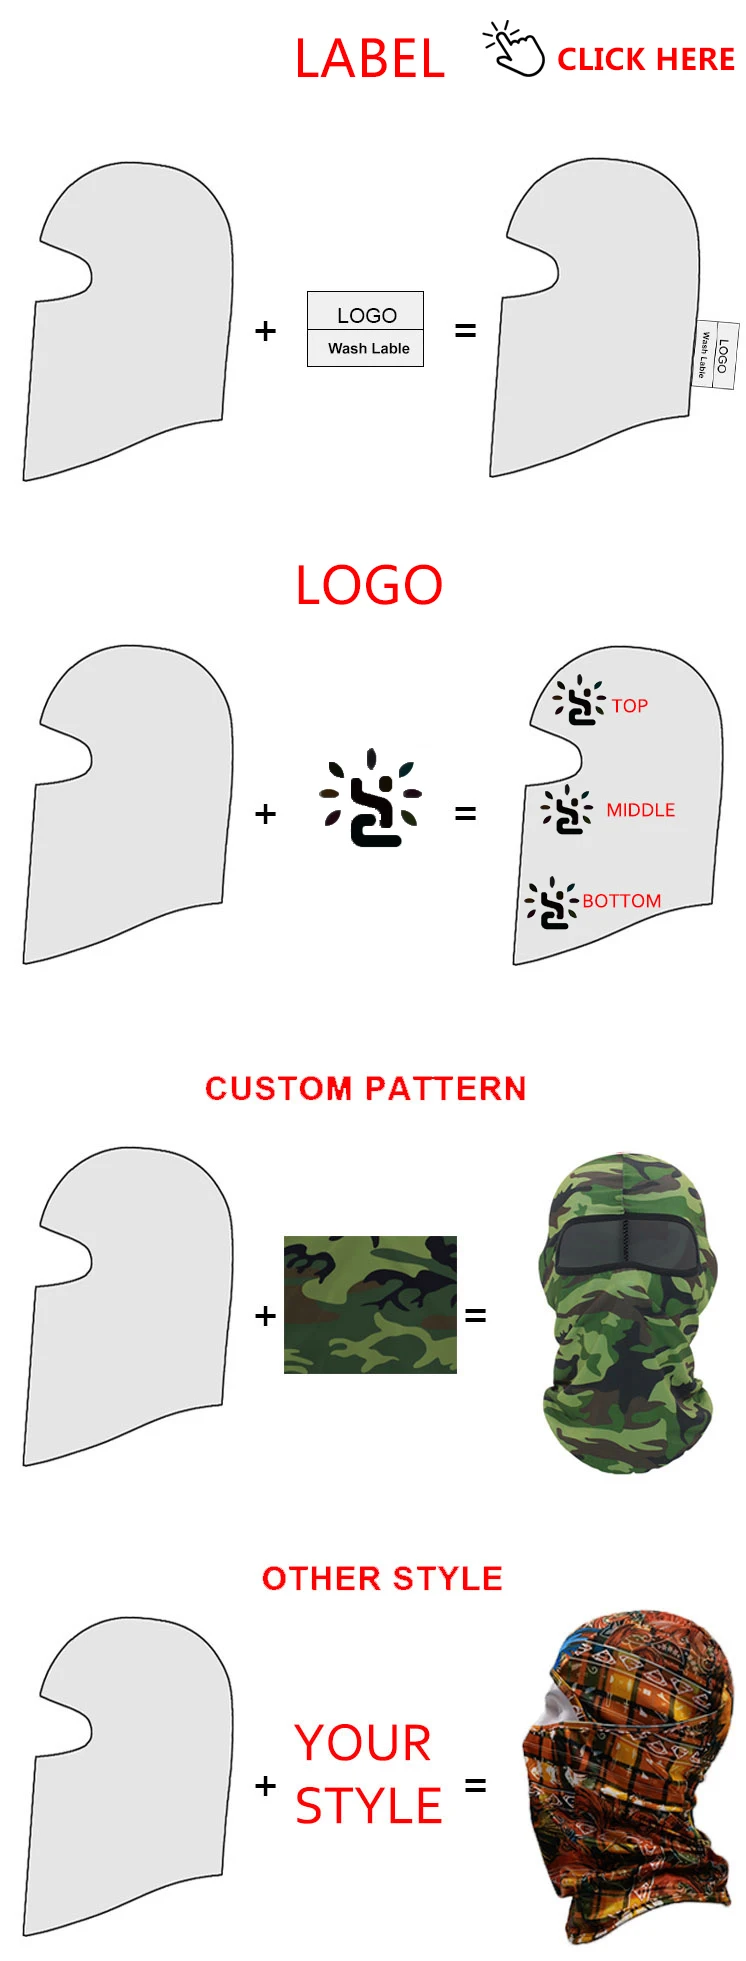 Balaclava Ski Mask Ninja Style Sewing Pattern